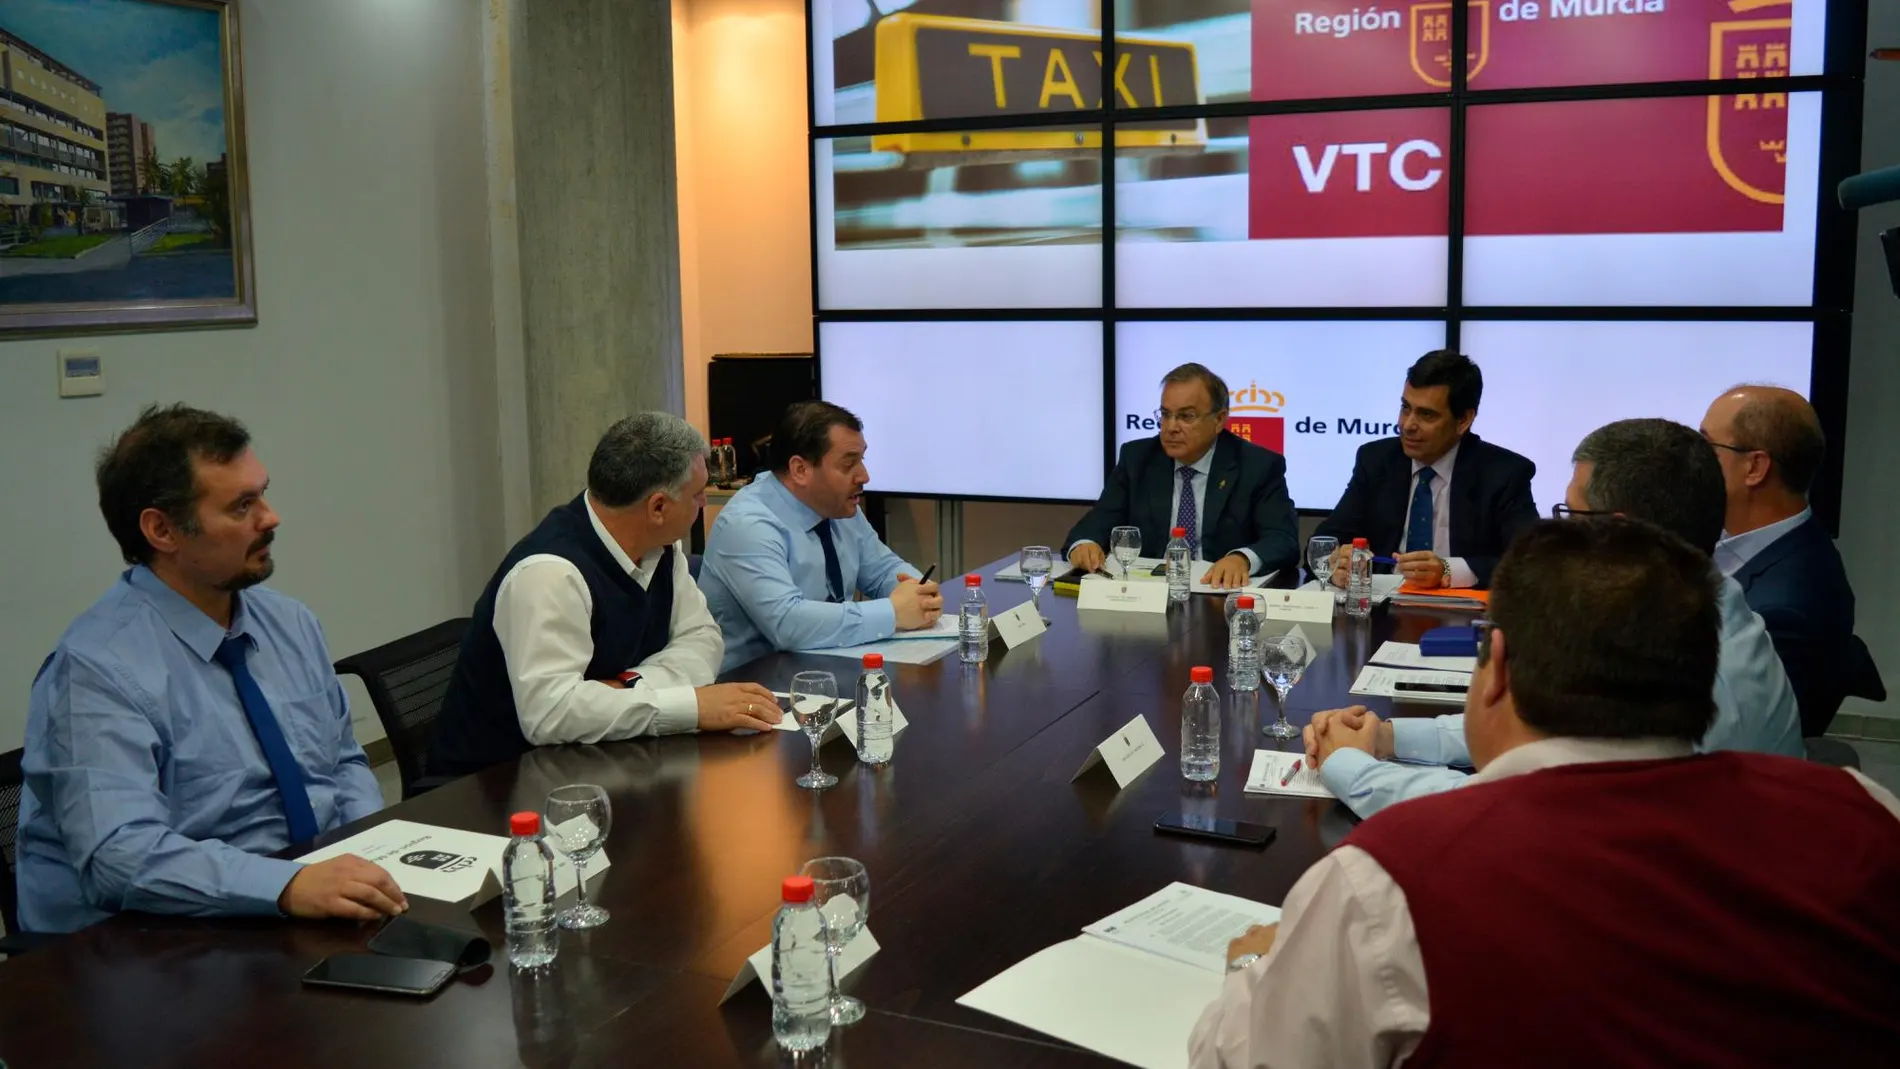 El consejero de Fomento e Infraestructuras, Patricio Valverde, se reunió ayer con representantes del sector del taxi y de los VTC para coordinar las medidas que se desarrollarán para garantizar la convivencia entre ambos sistemas de transporte en la Región de Murcia